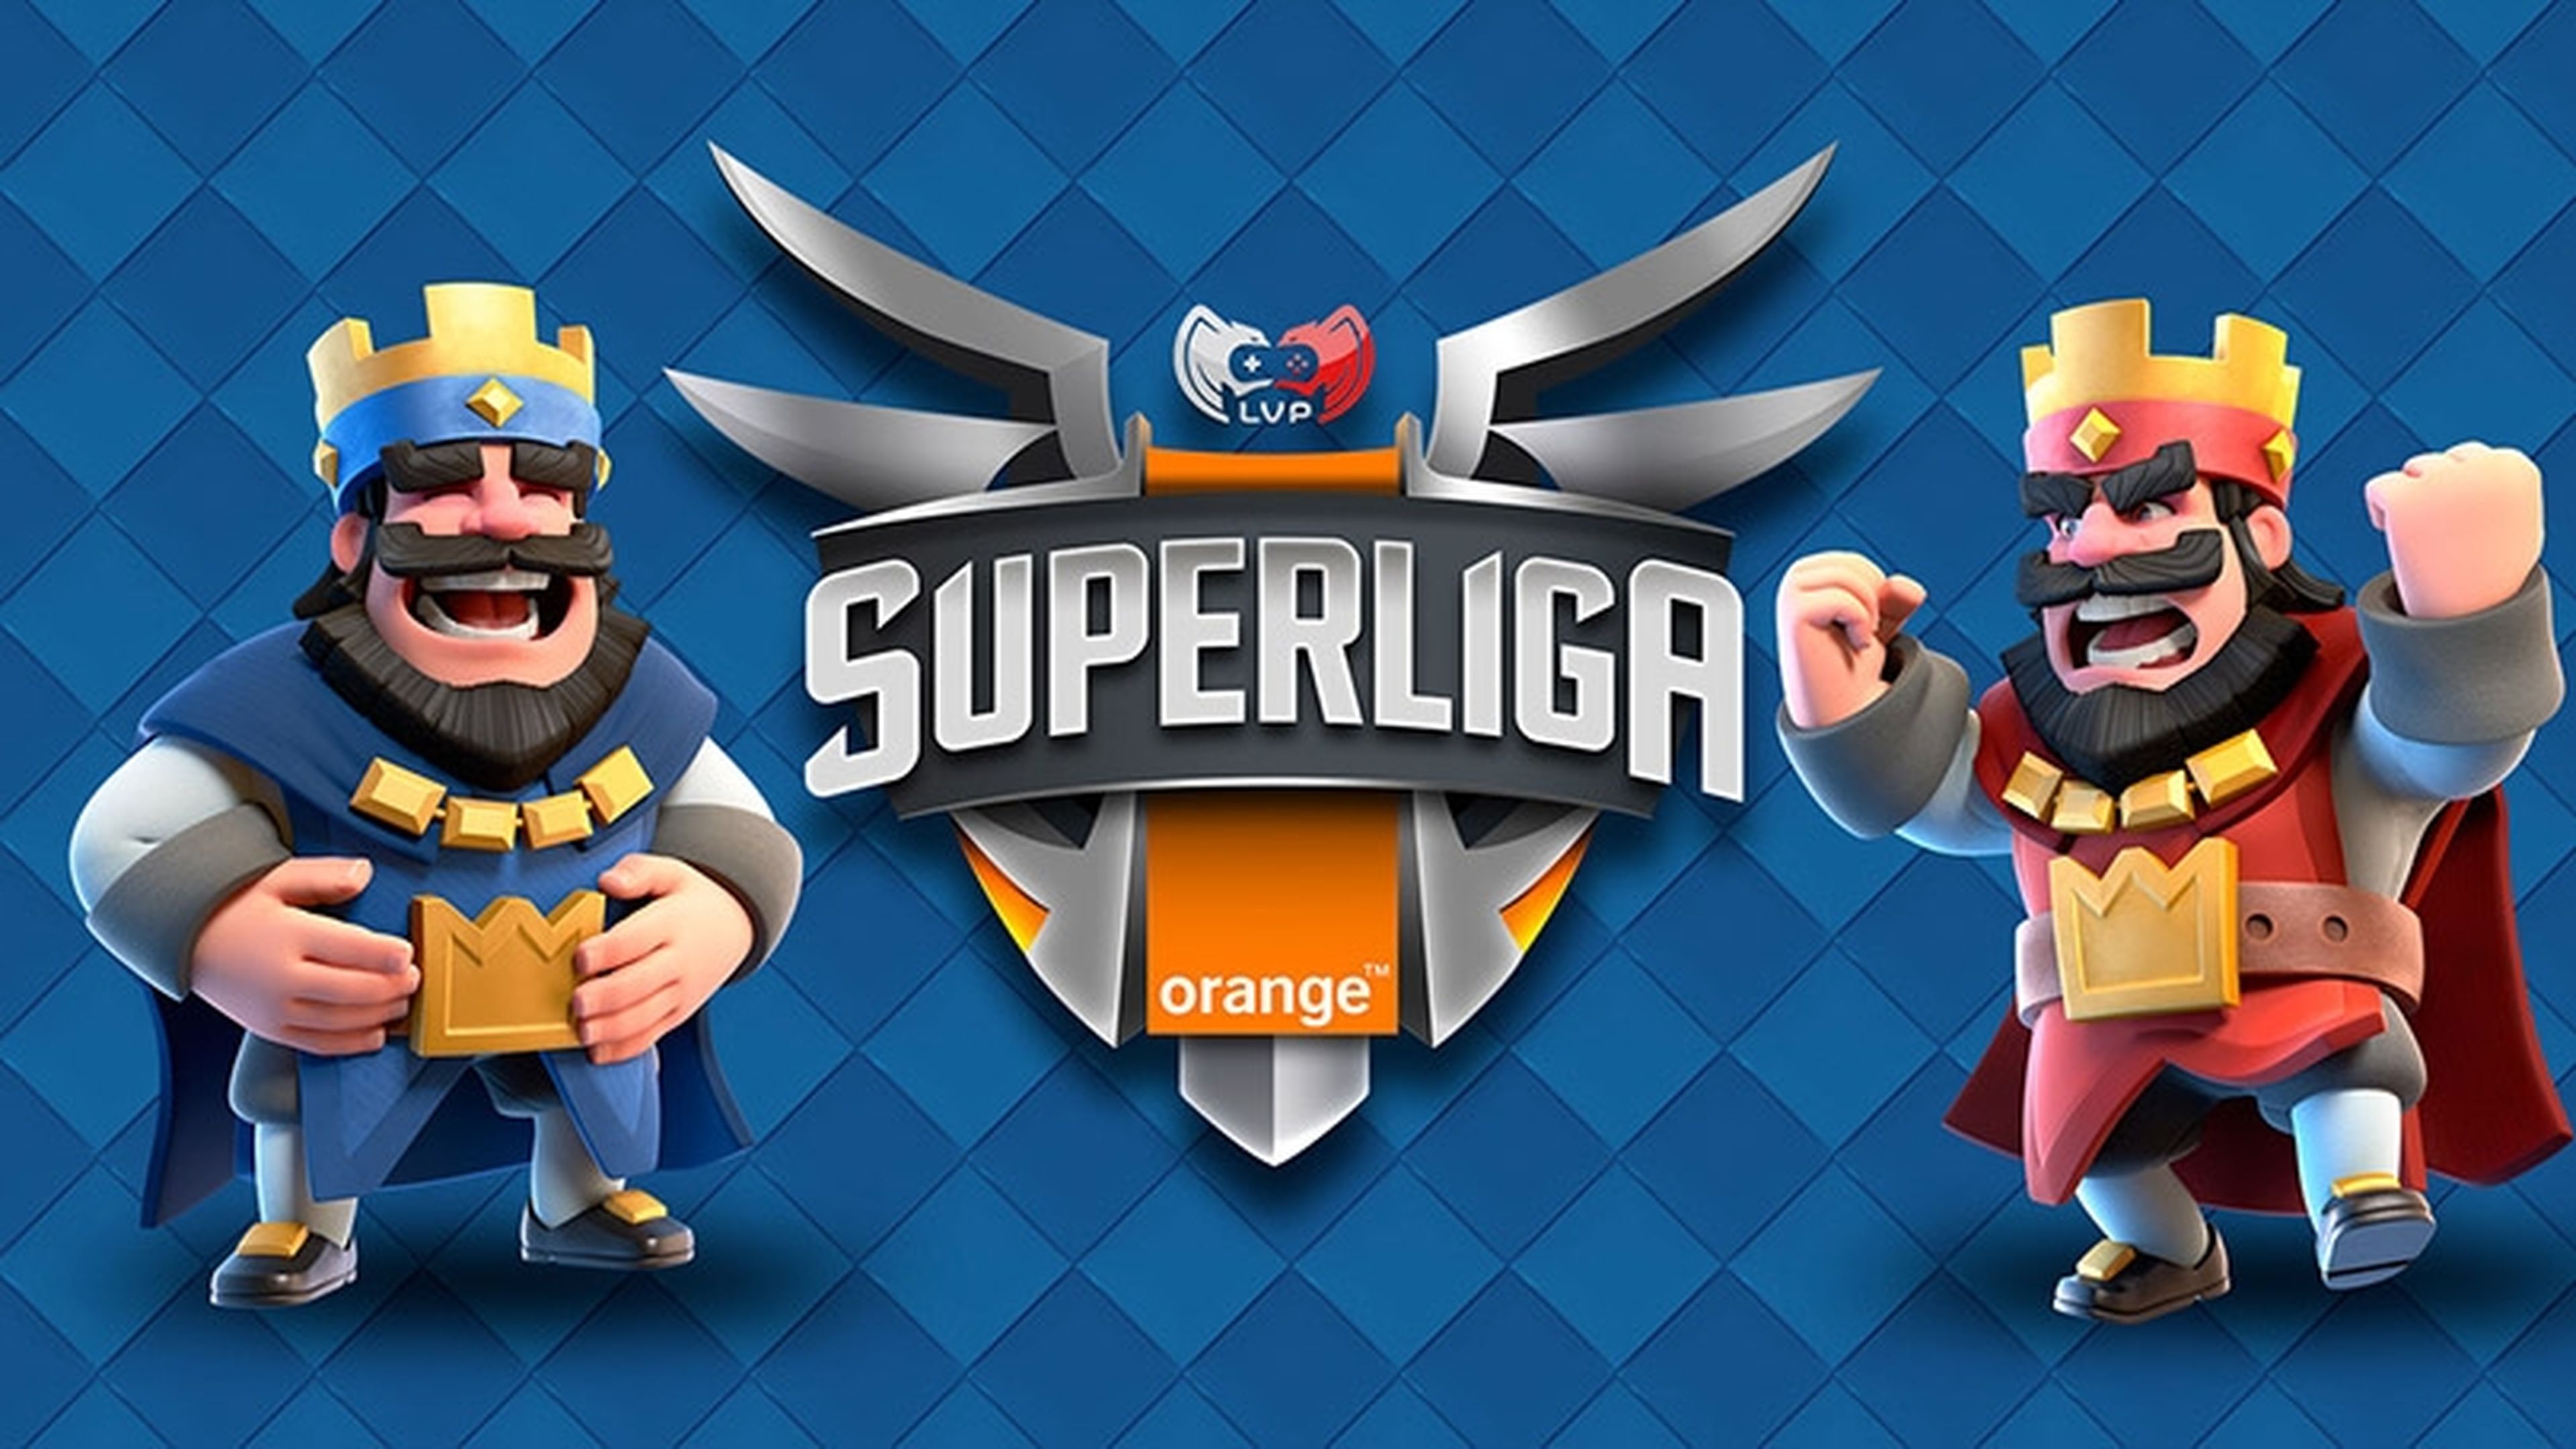 Superliga Orange Clash Royale